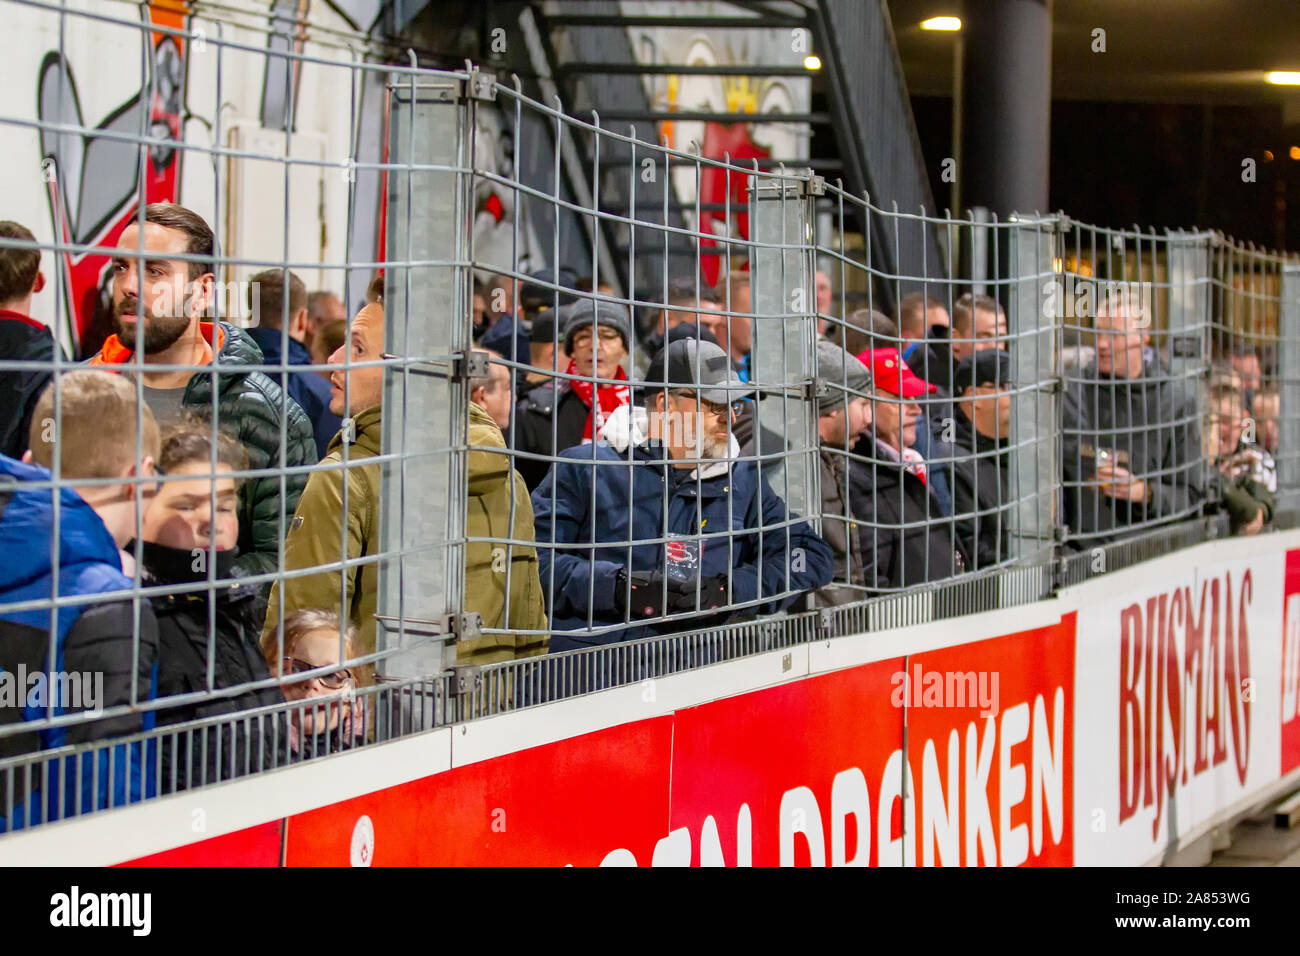 1 novembre 2019 Maastricht, Paesi Bassi Calcio Olandese Keuken Kampioen Divisie Almere City FC contro MVV Maastricht KKD 2019-2020 Toeschouwers blijven demonstratief in de grachten staan (daar waar dat verboden is) en weigeren de tribunes op te gaan. Foto Stock